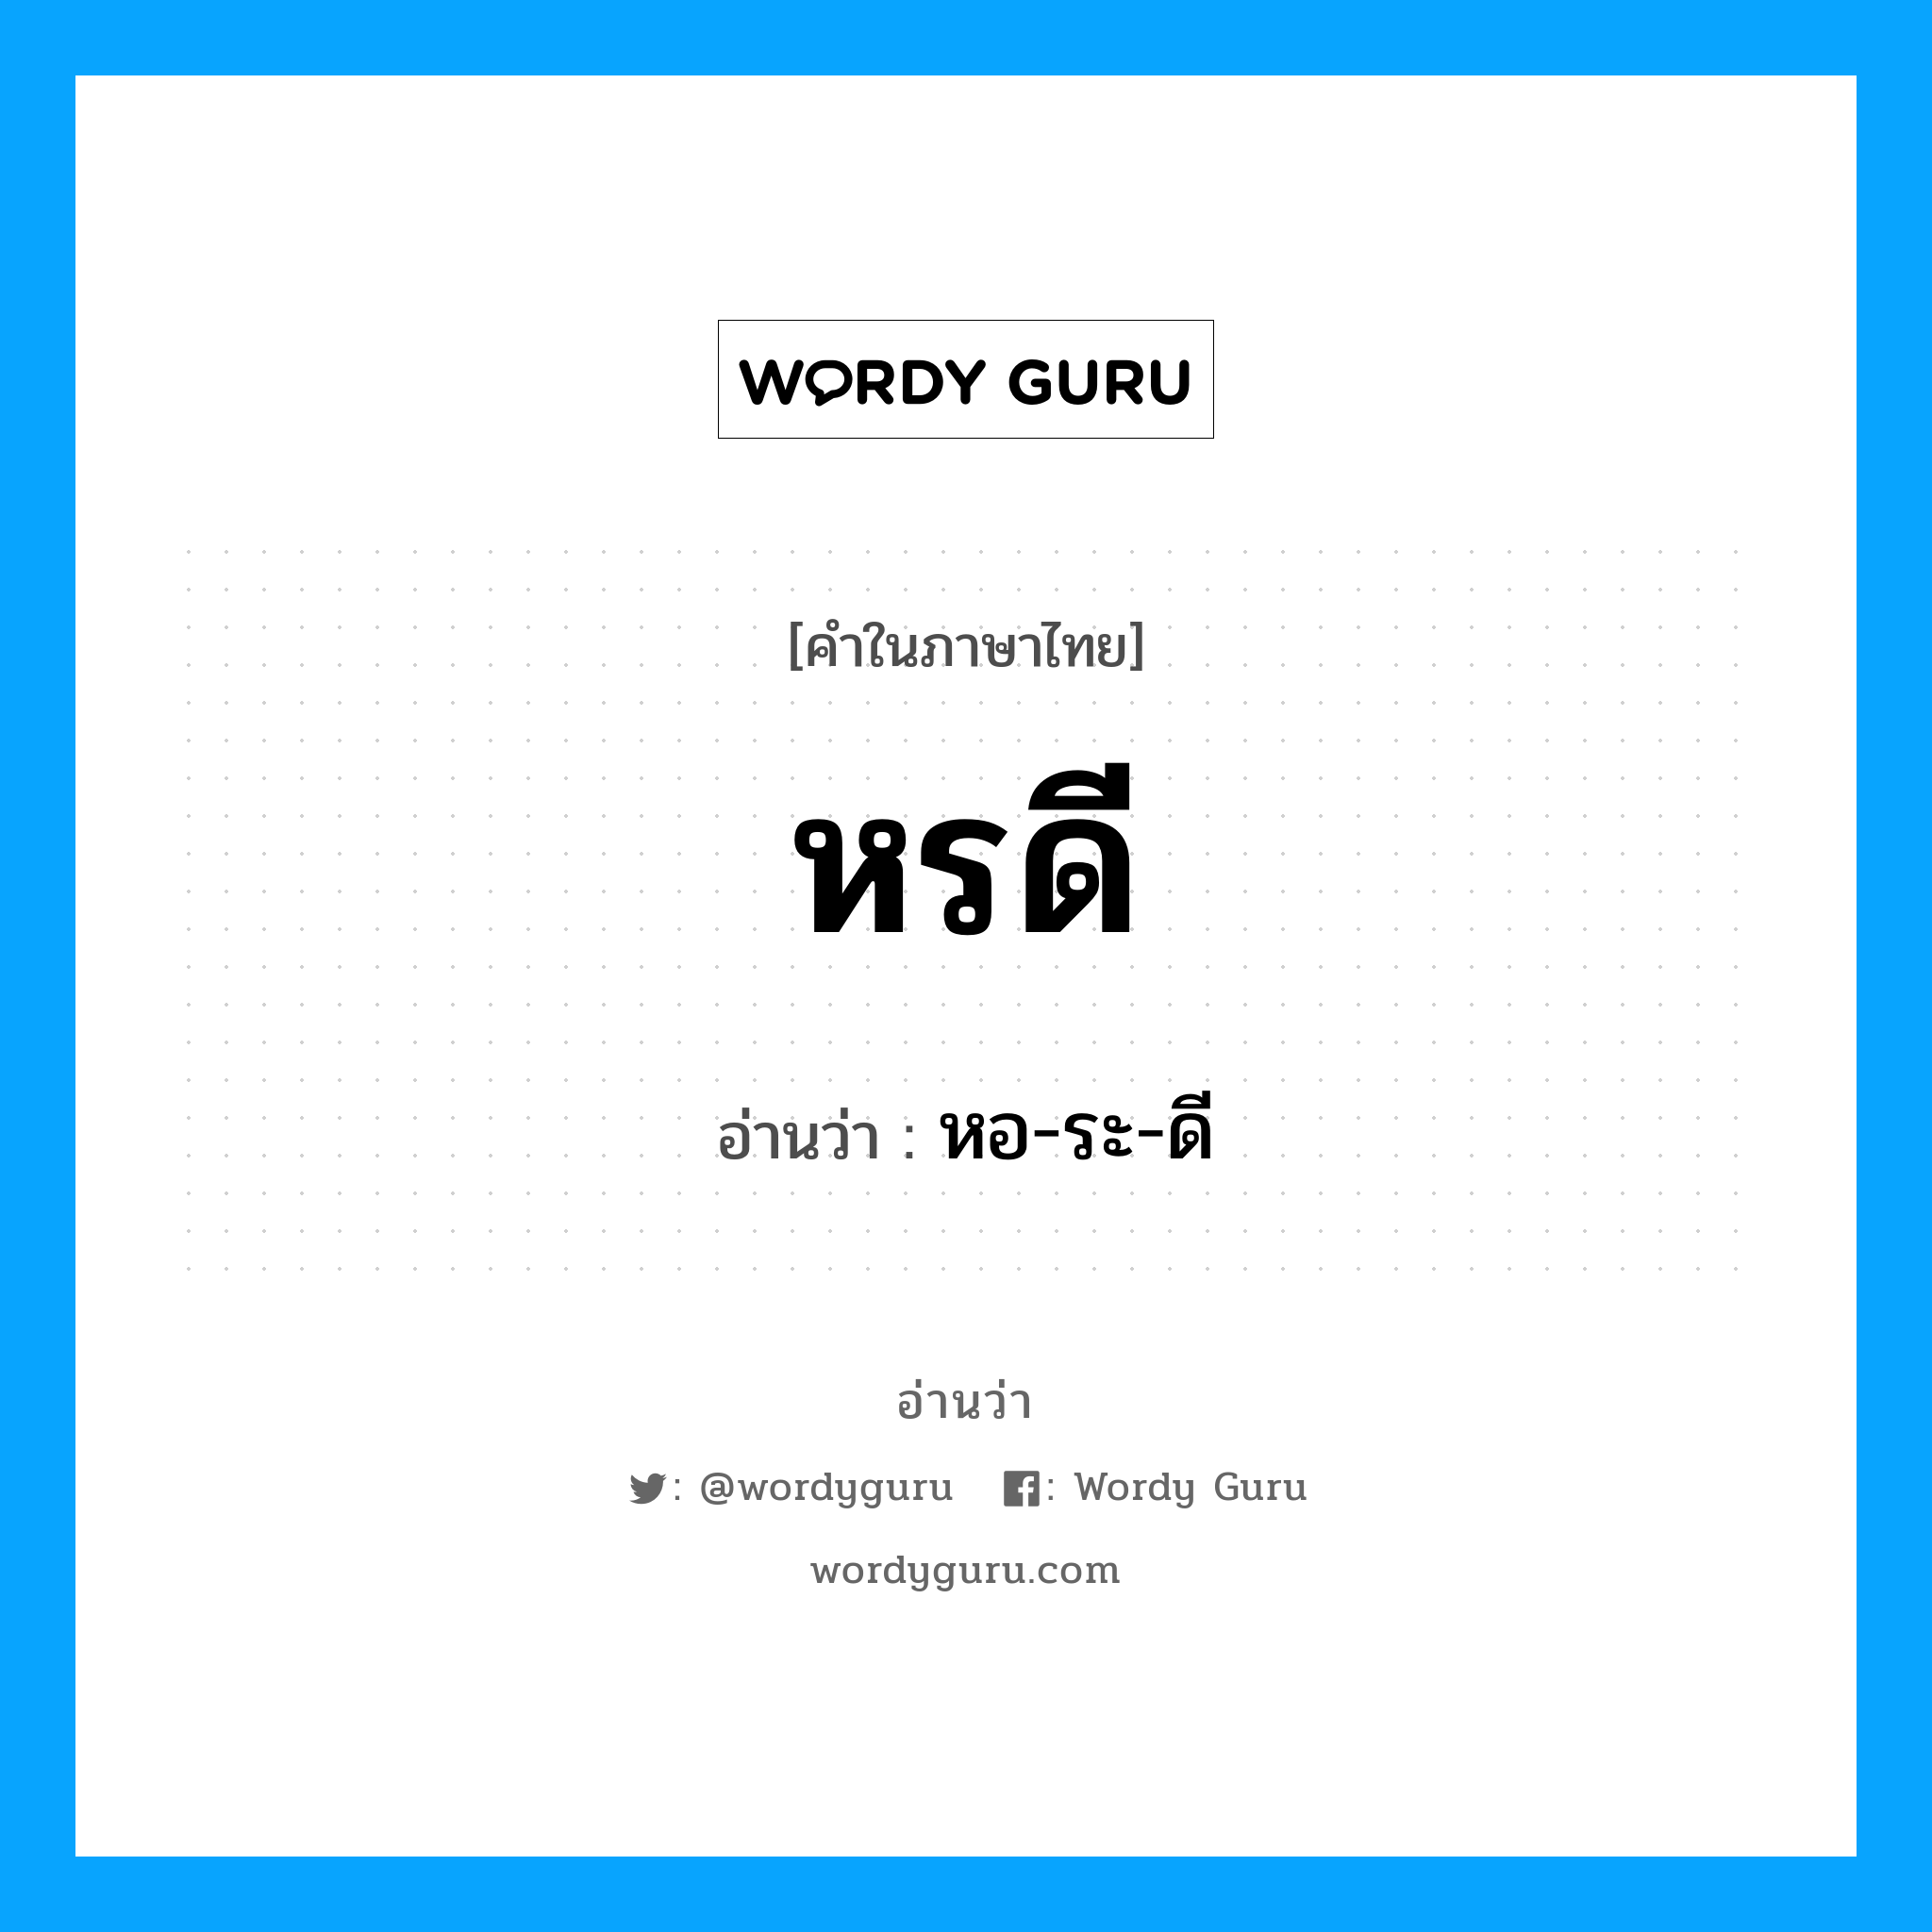 หอ-ระ-ดี เป็นคำอ่านของคำไหน?, คำในภาษาไทย หอ-ระ-ดี อ่านว่า หรดี